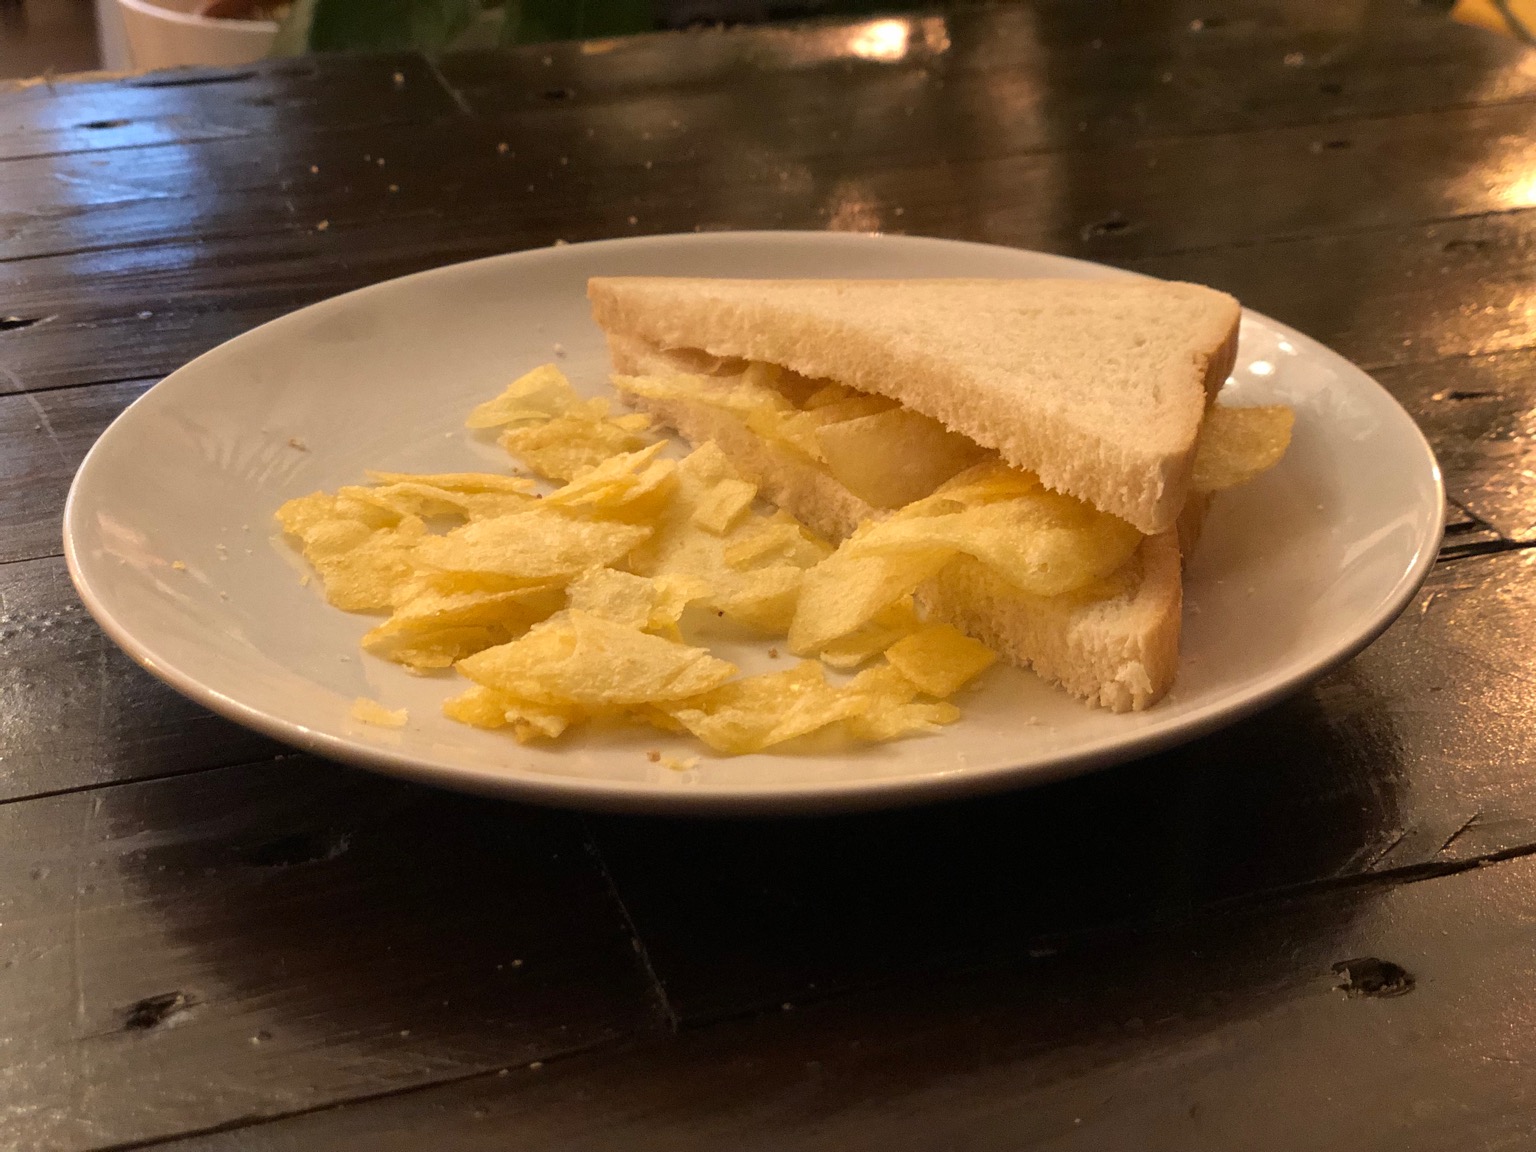 Potato crisps in and alongside white sliced bread